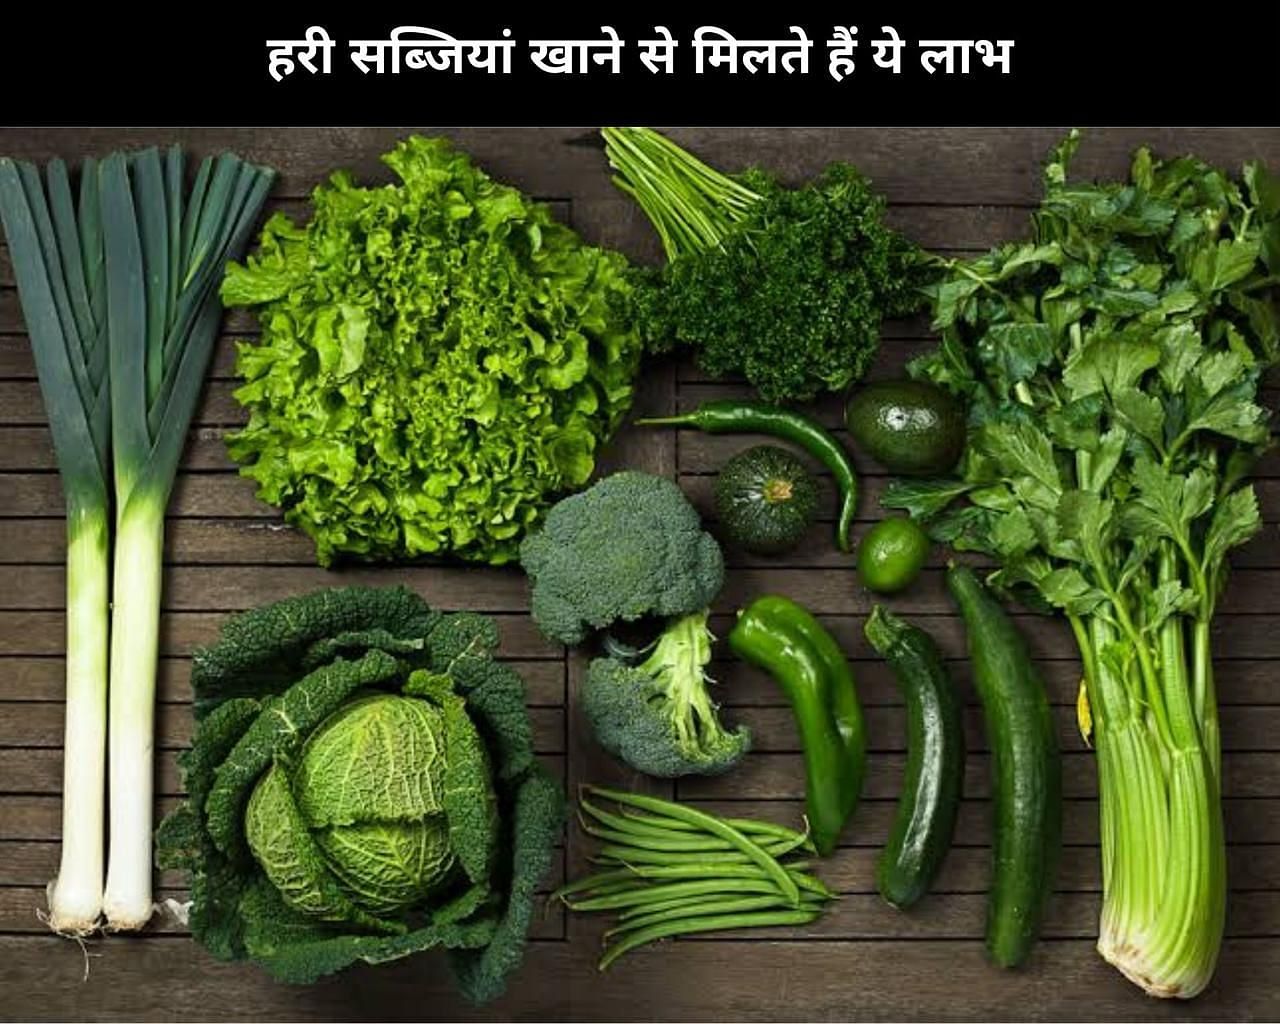 हरी सब्जियां खाने से मिलते हैं ये 10 लाभ (फोटो - sportskeedaहिन्दी)